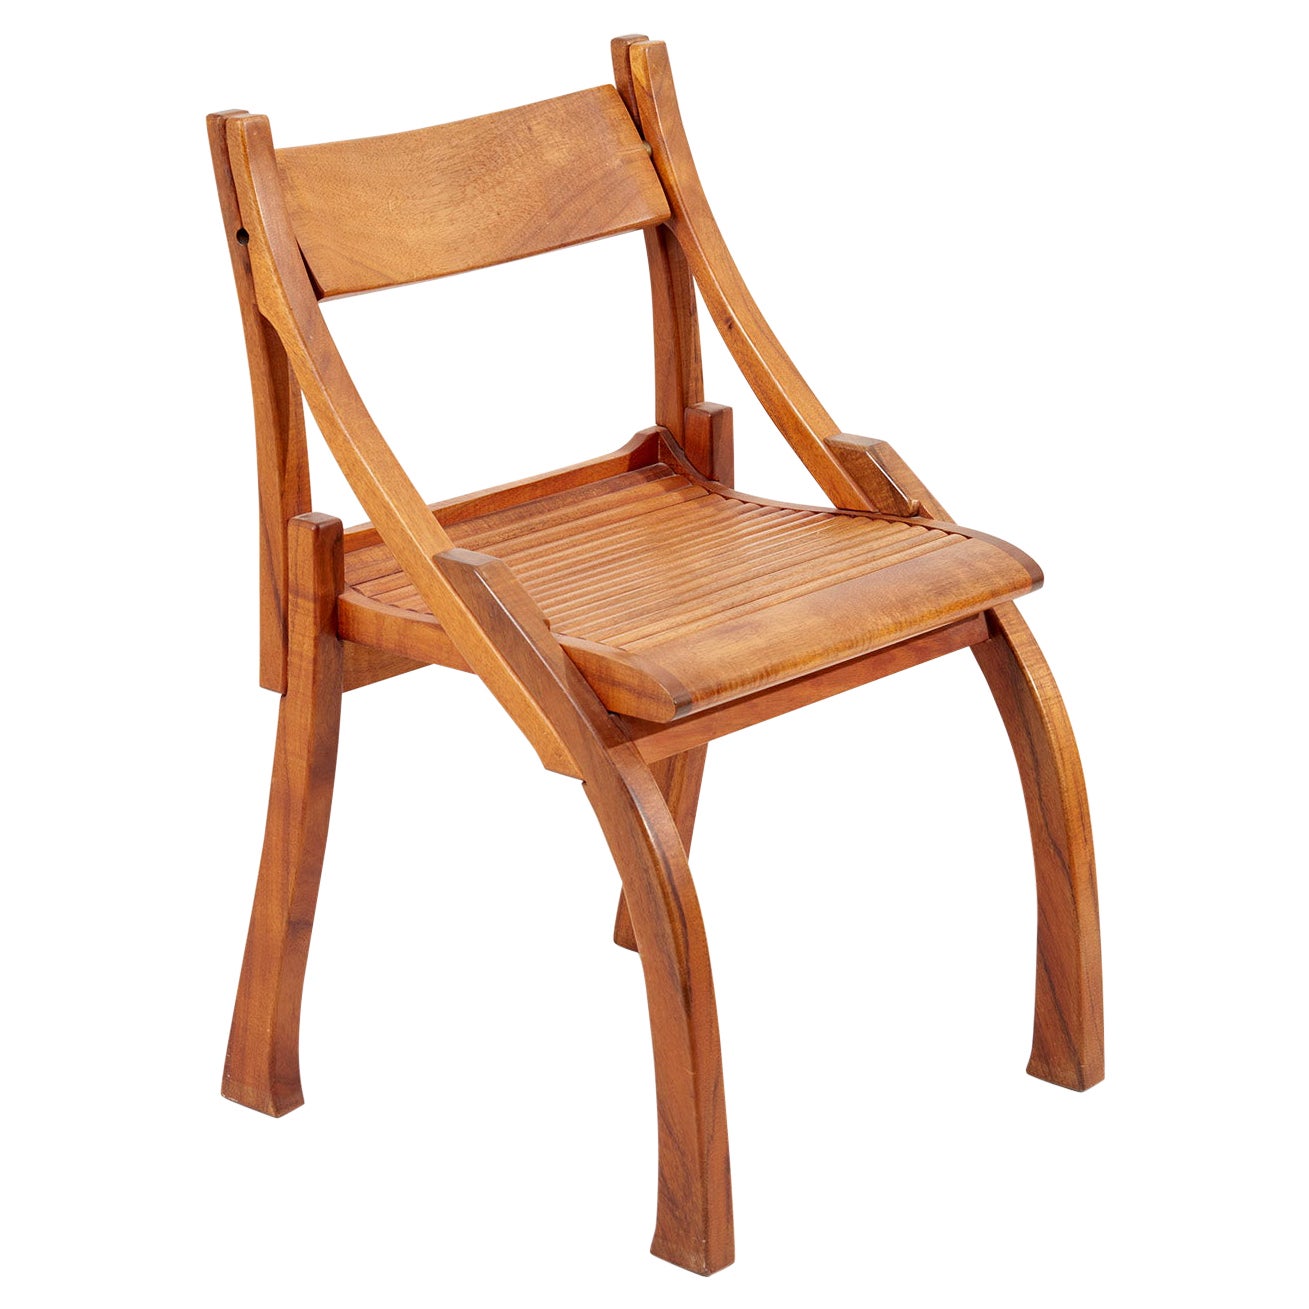 Chair by Bruce Erdman in Koa Wood, 1984 For Sale